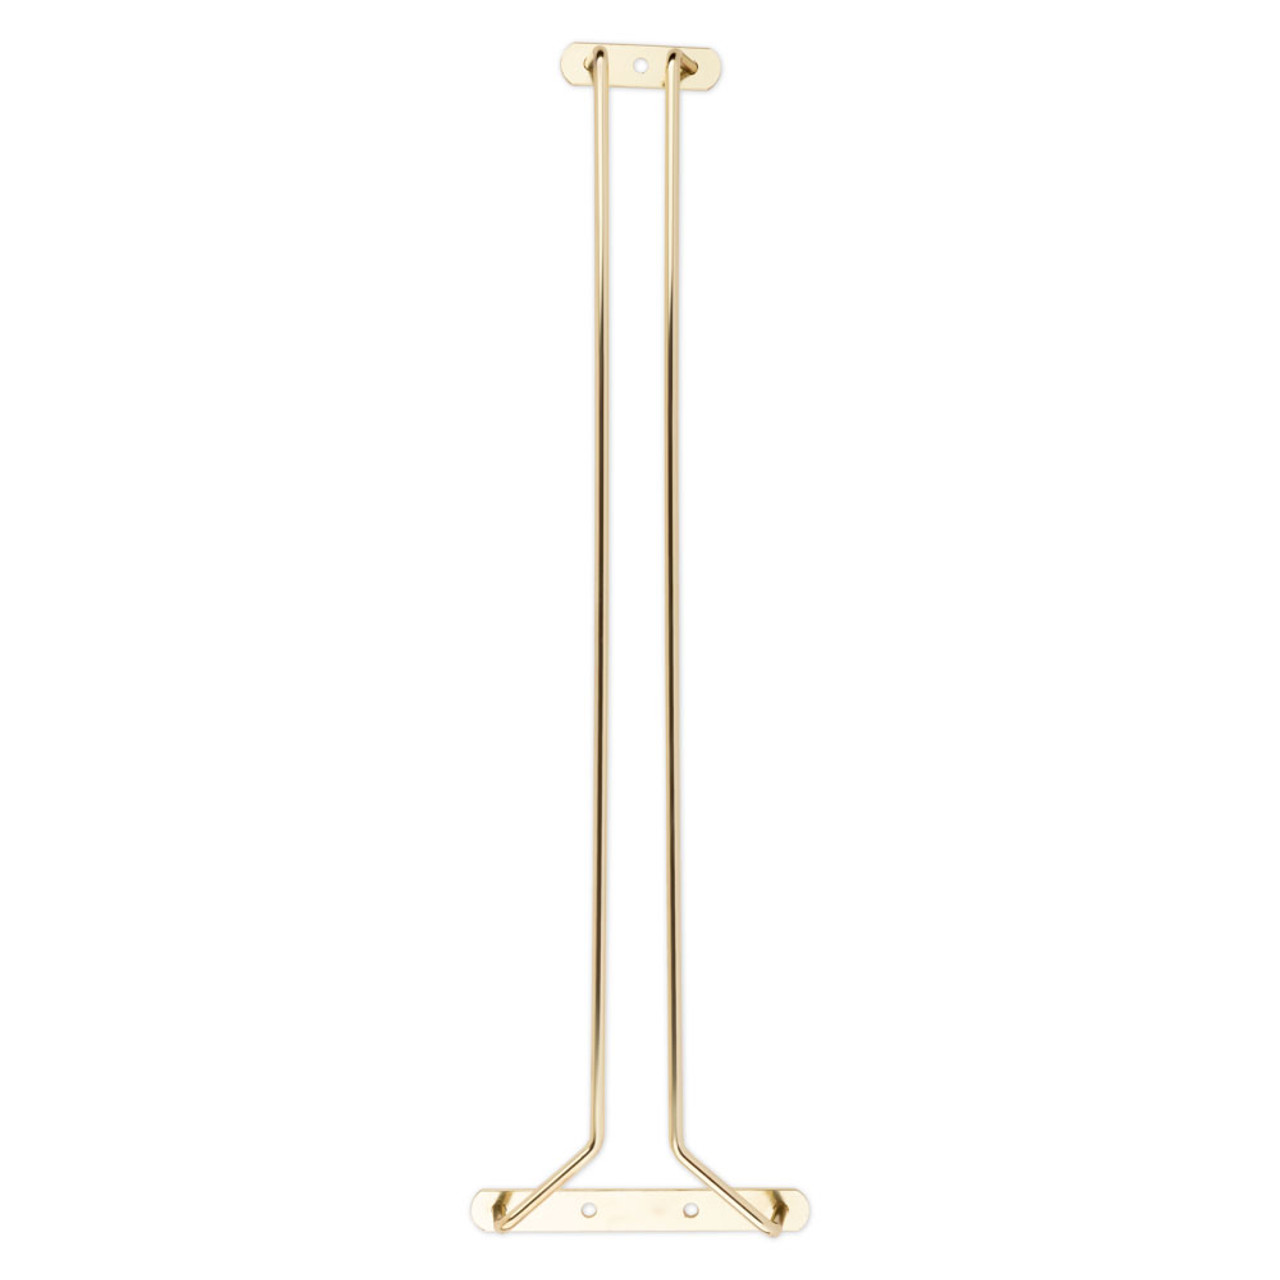 Glass Hanger Rack - Brass - 16